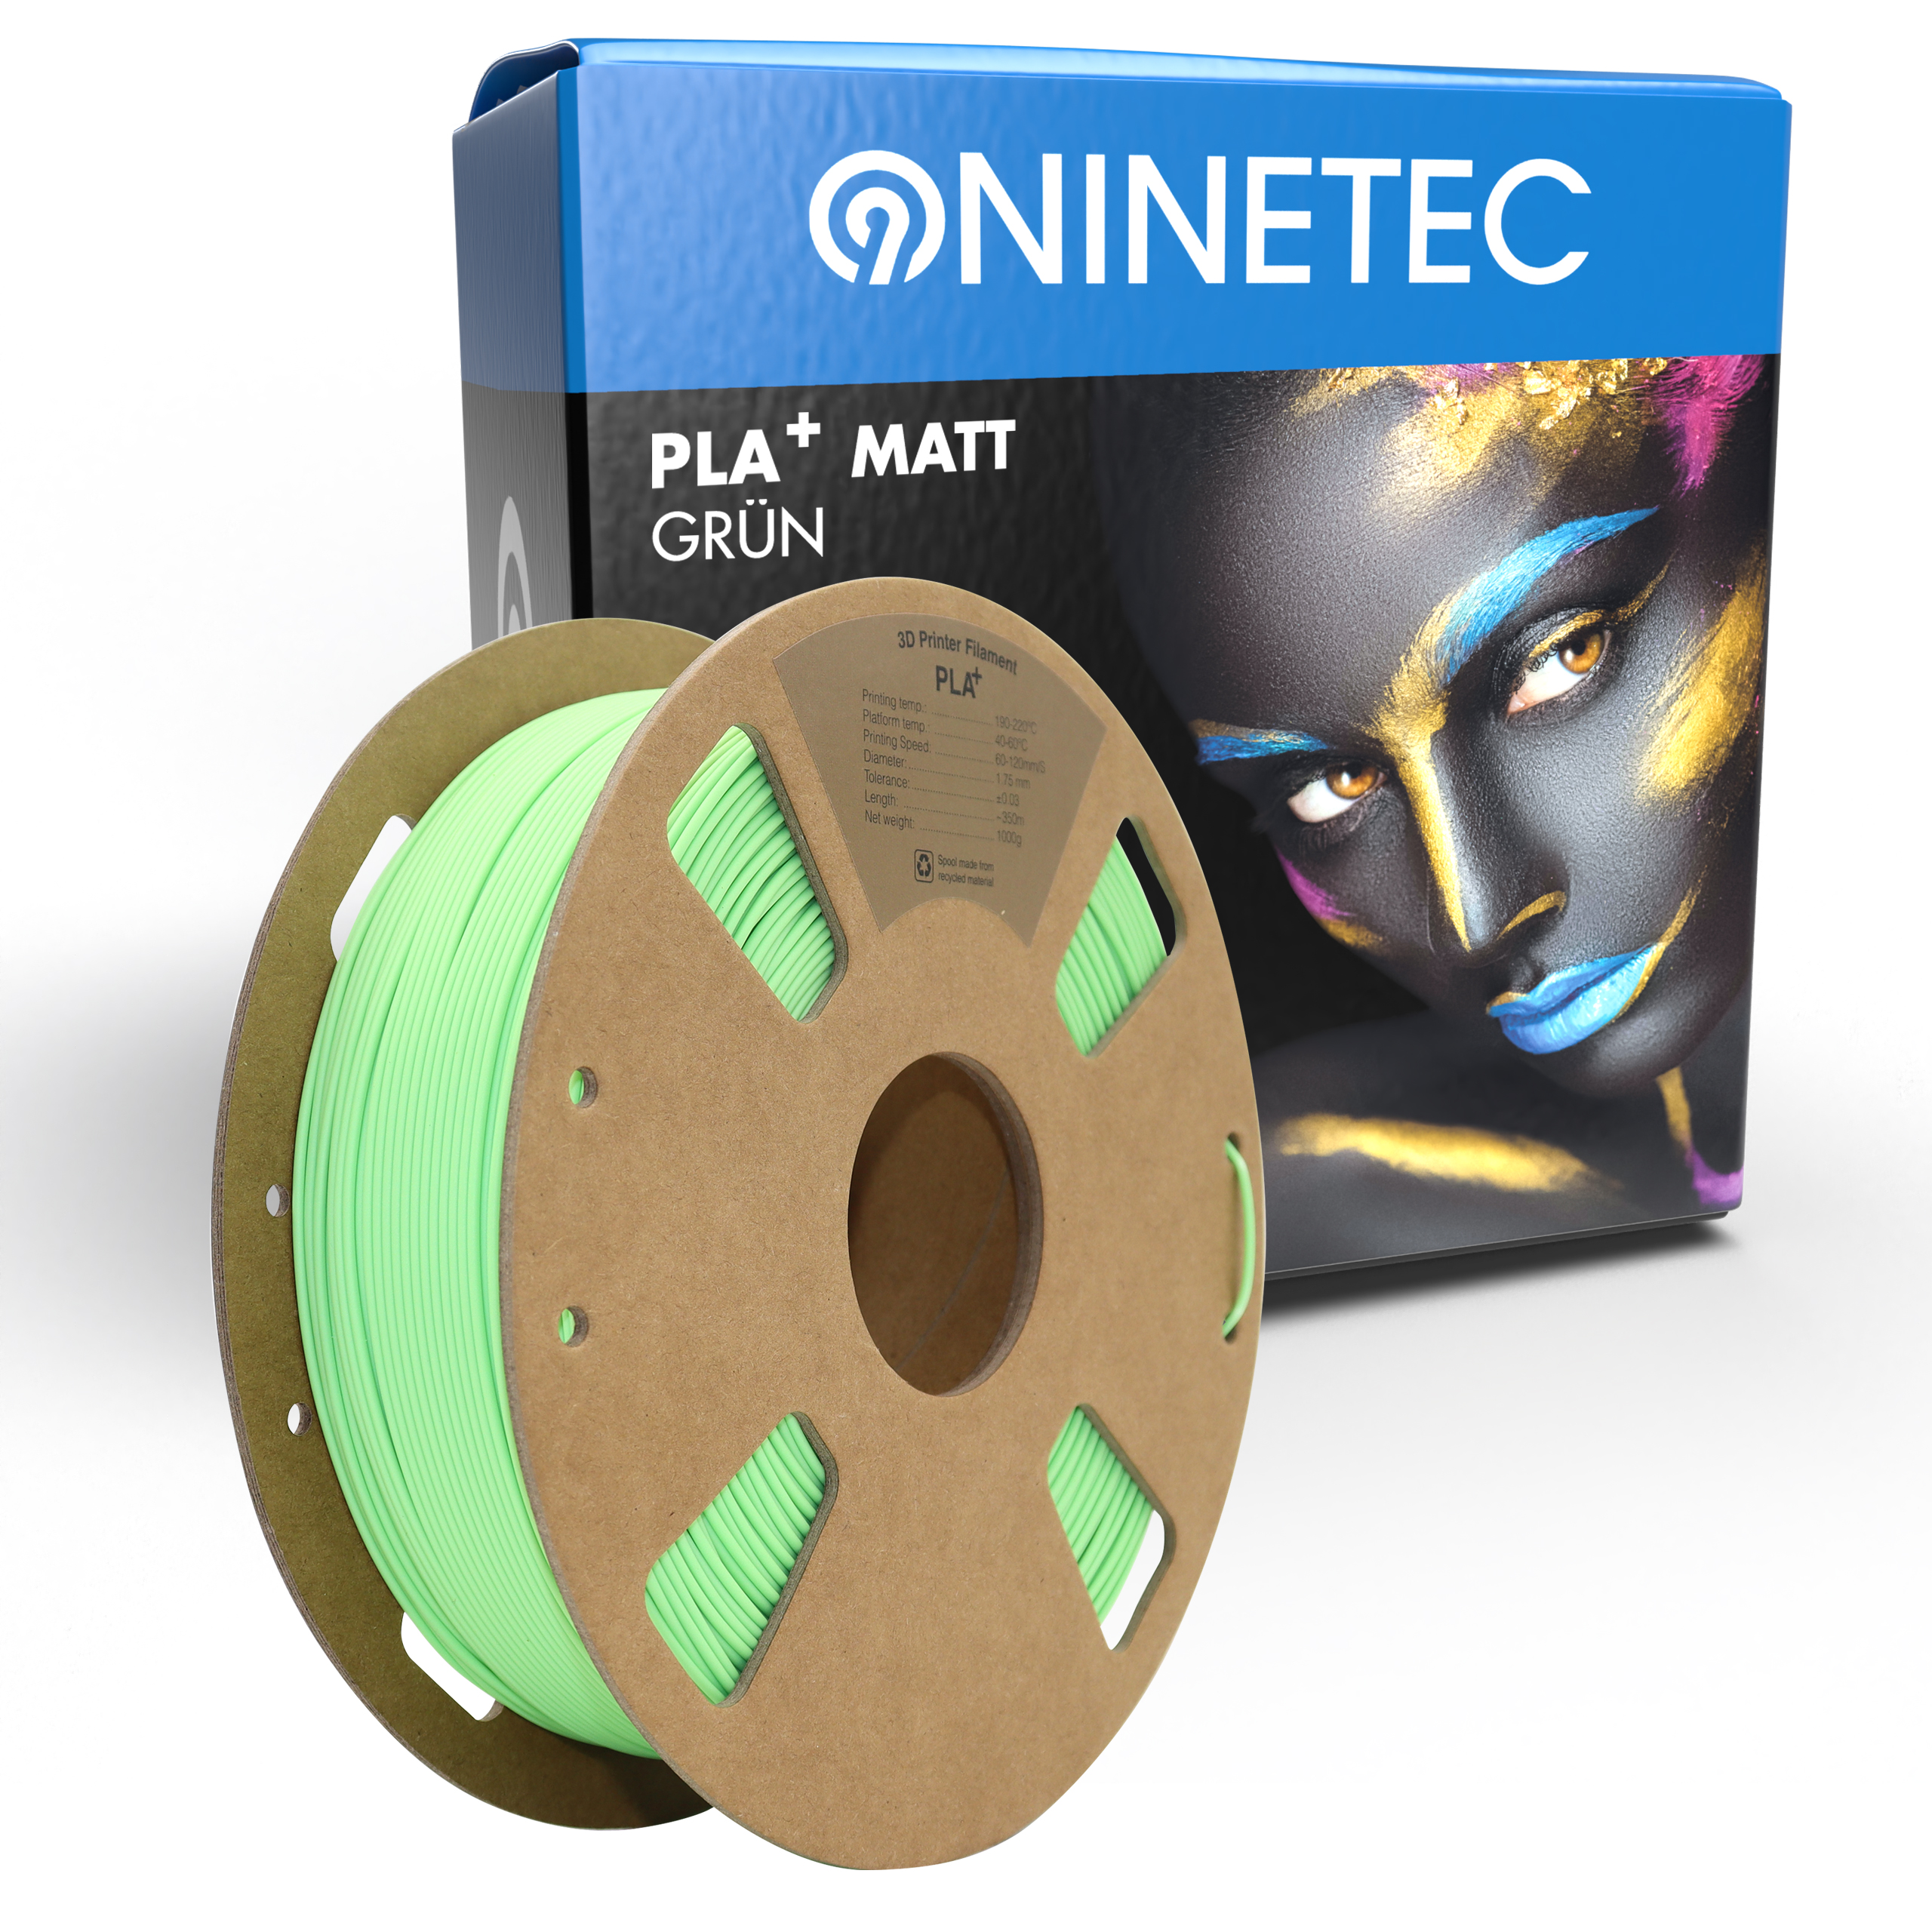 NINETEC PLA+ Filament Grün Matt